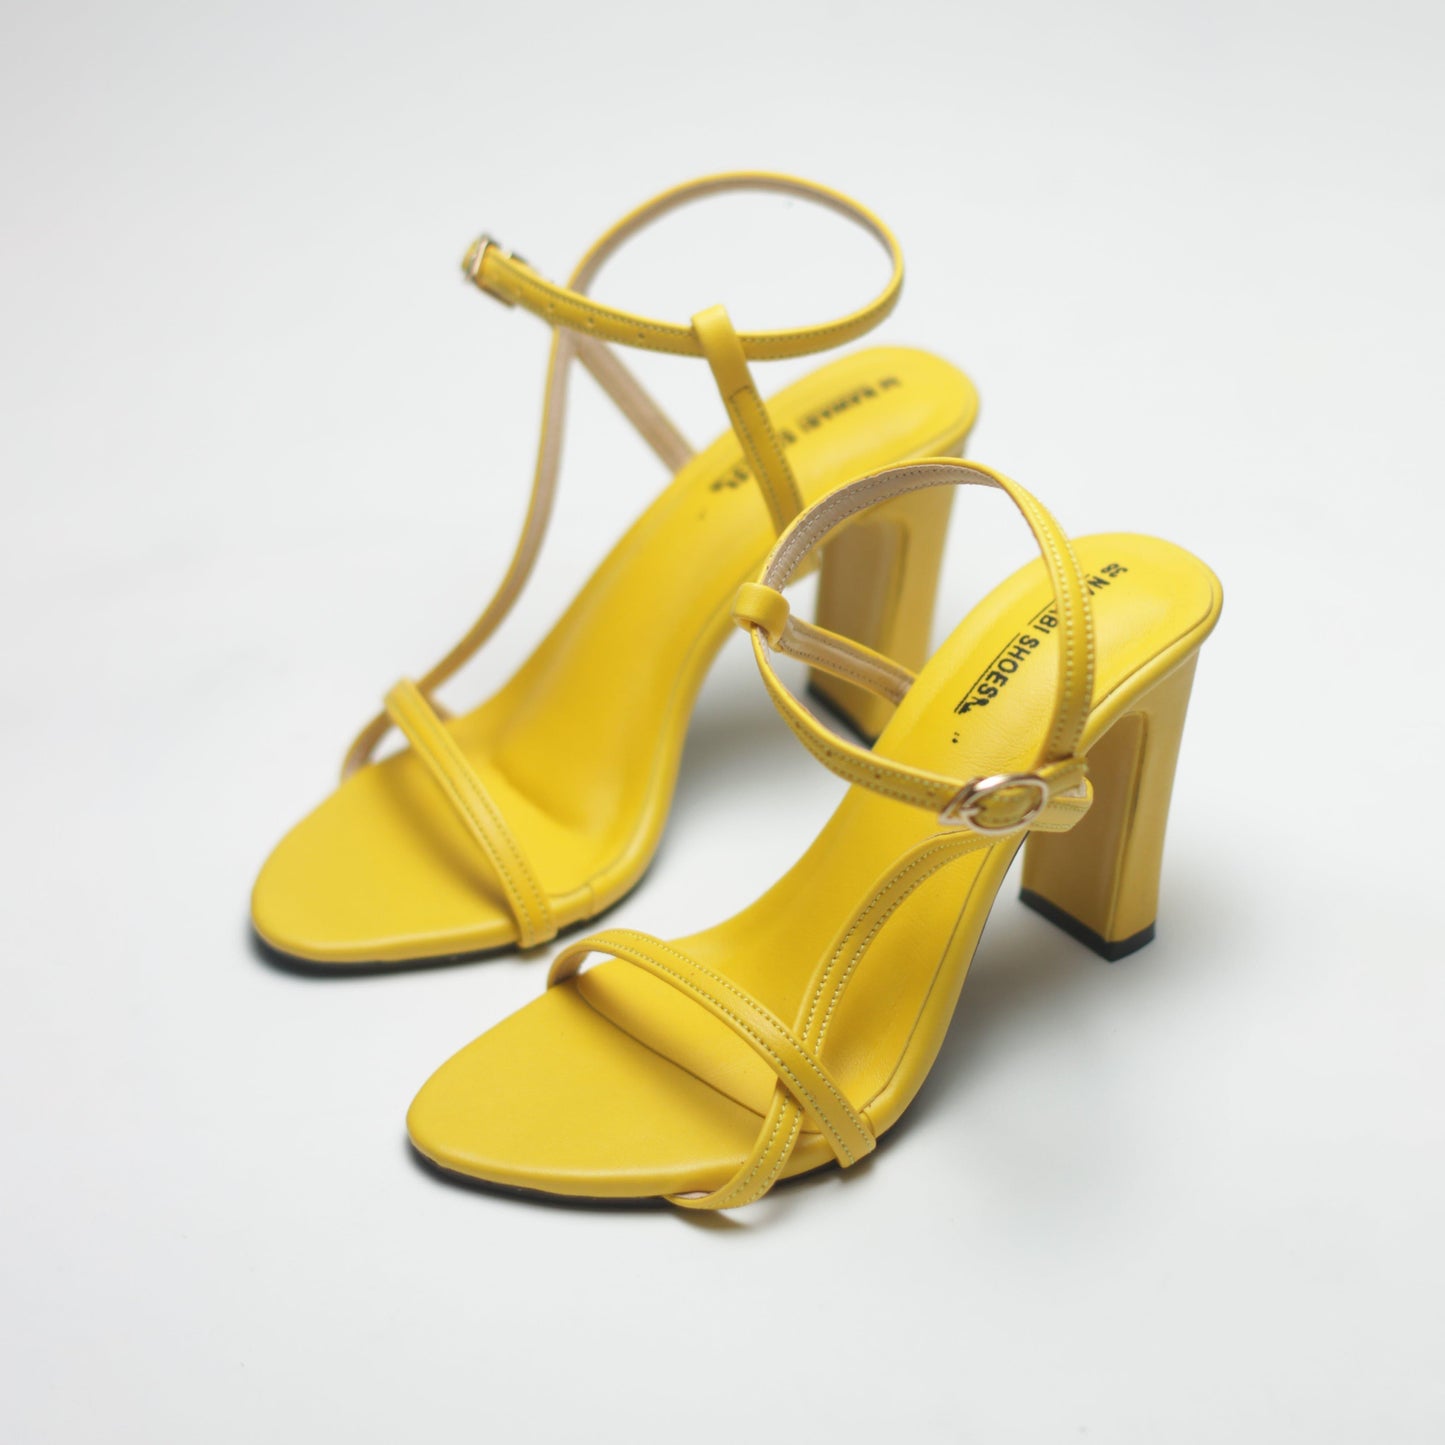 Nawabi Shoes BD Shoes 35 / Yellow / 2 Inch Block Heels Luxury Shoes